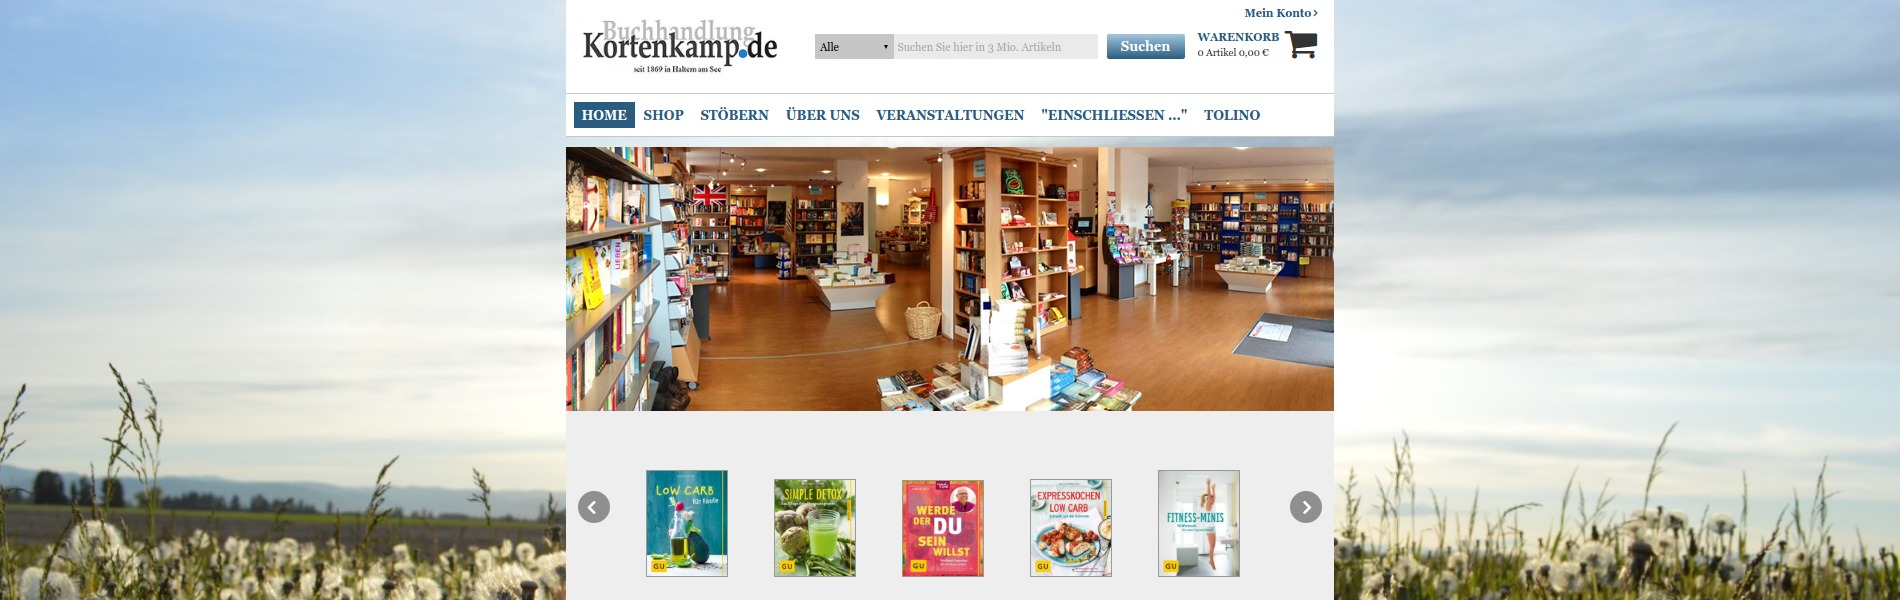 Buchhandlung Kortenkamp - BUCHHANDELSWEB - Internetauftritt Ihrer Buchhandlung